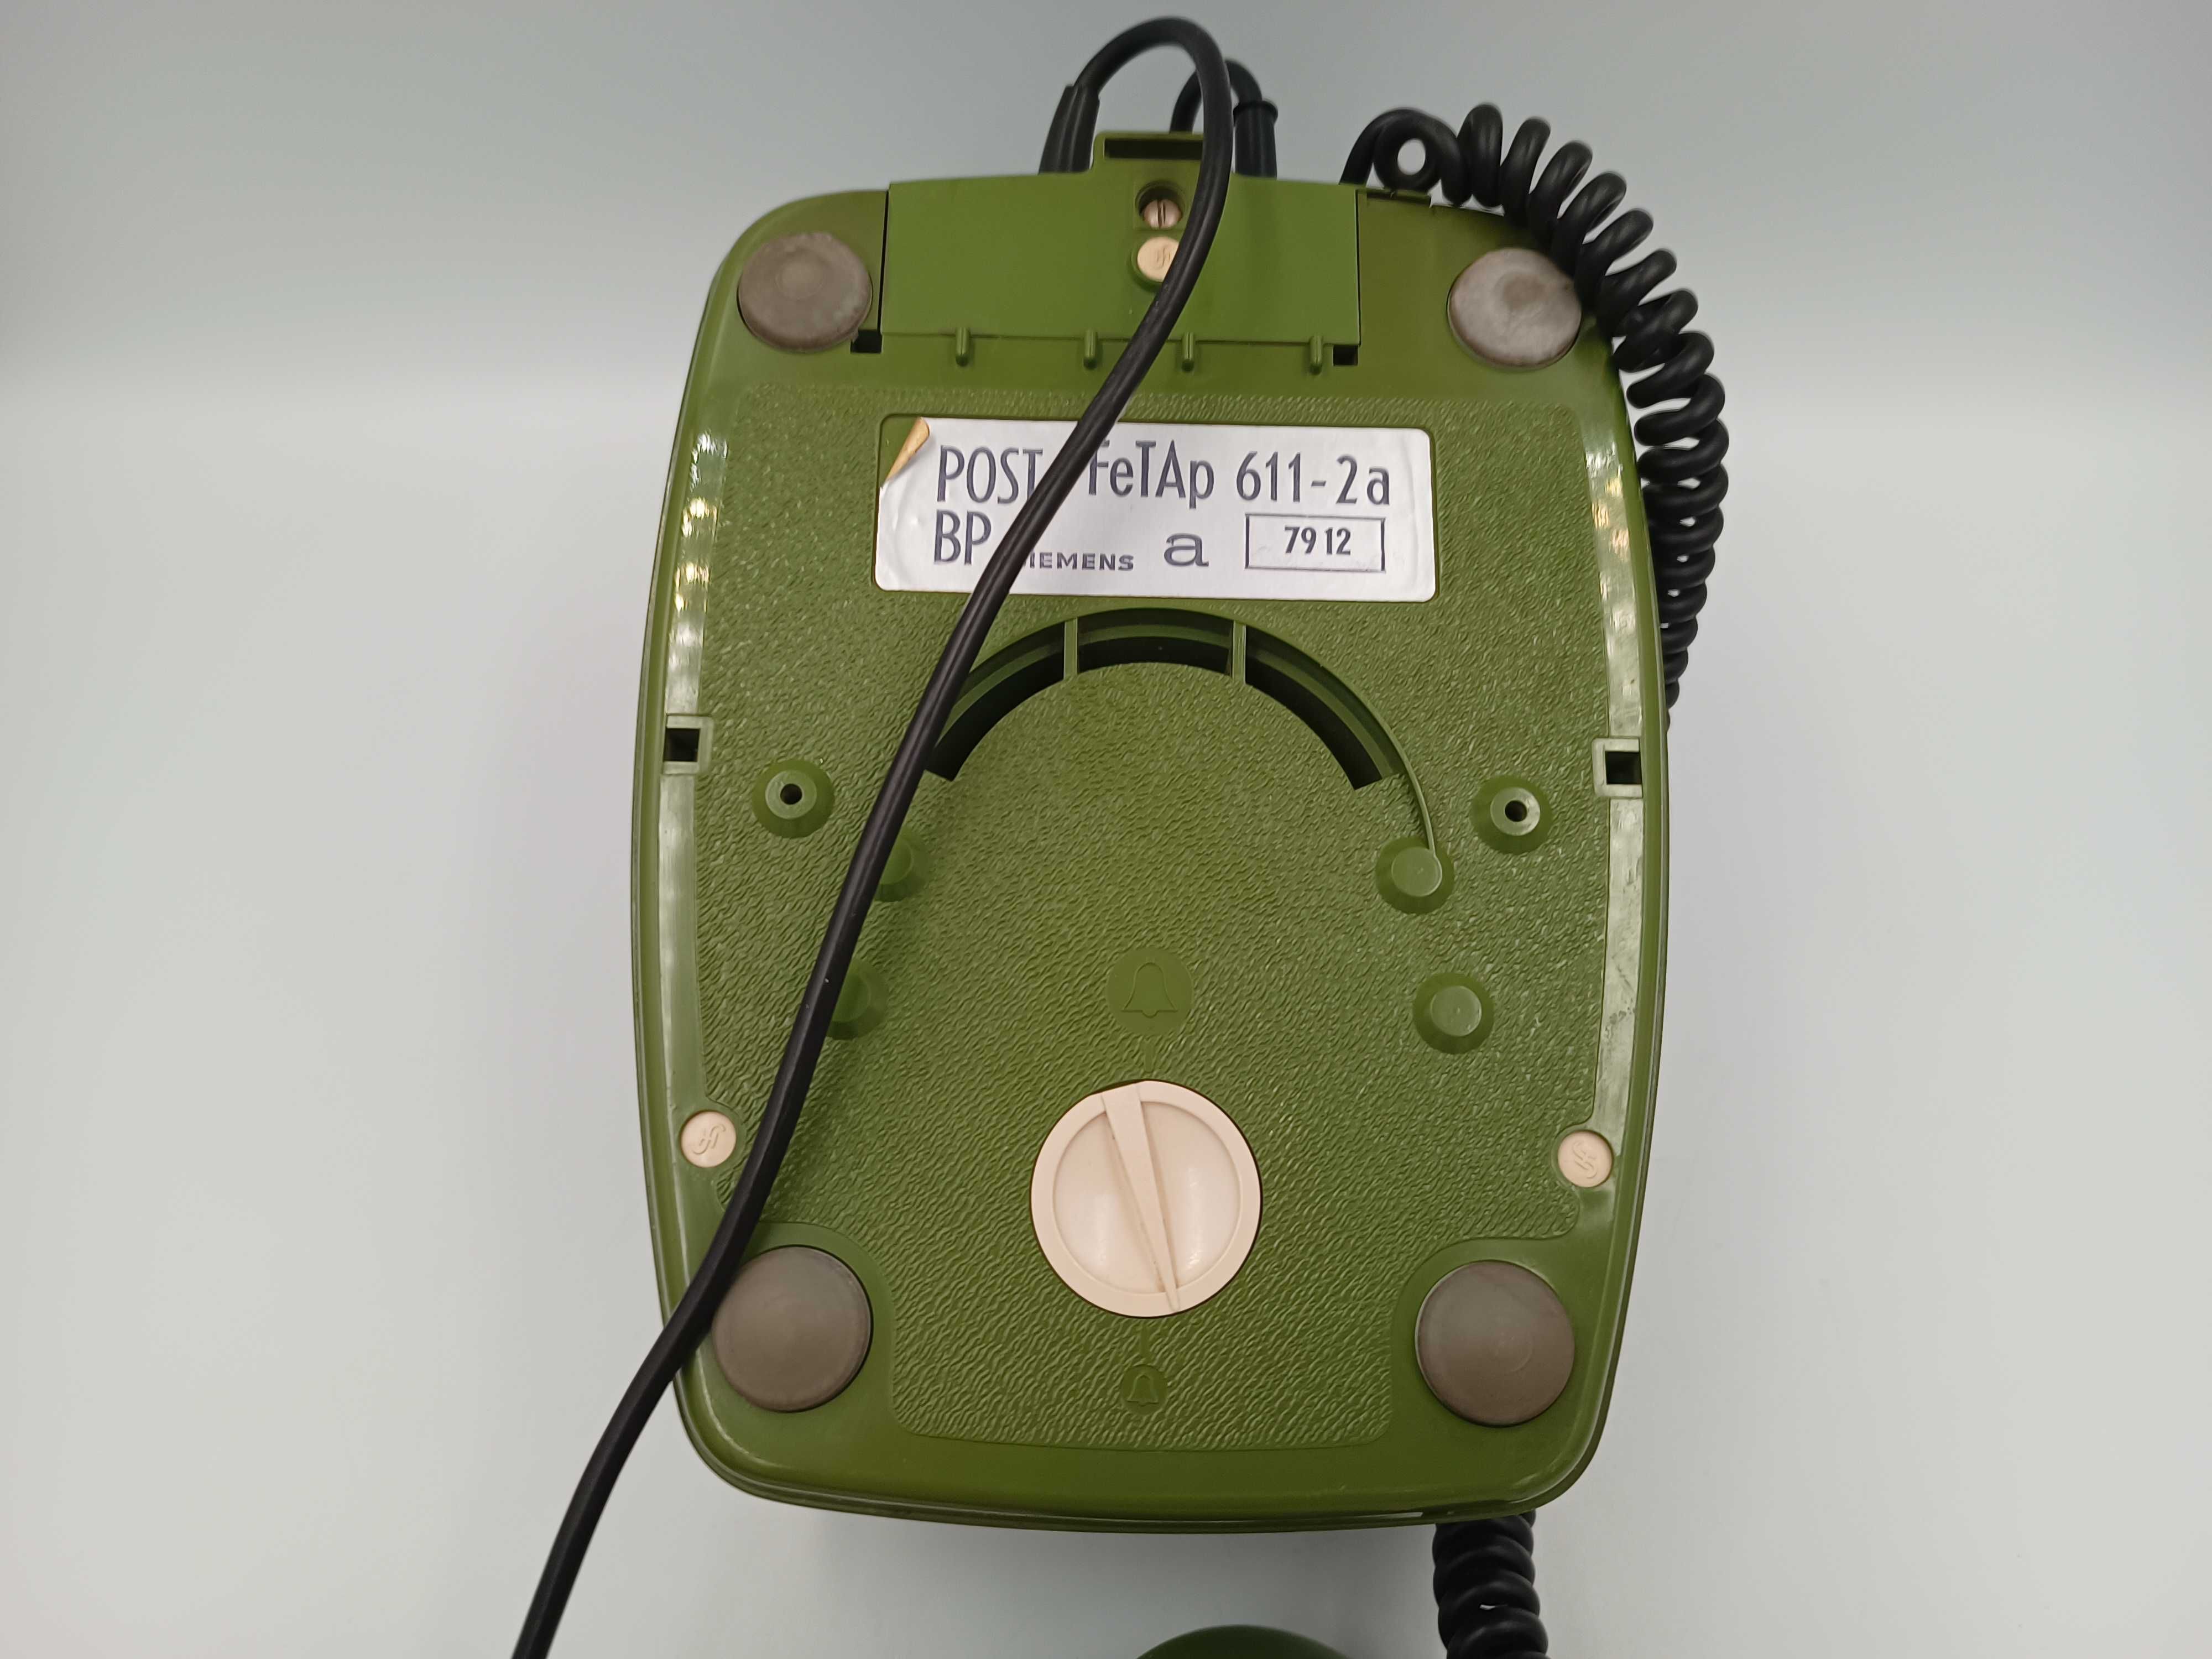 Analogowy telefon Siemens FeTAp 611-2a z tarczą